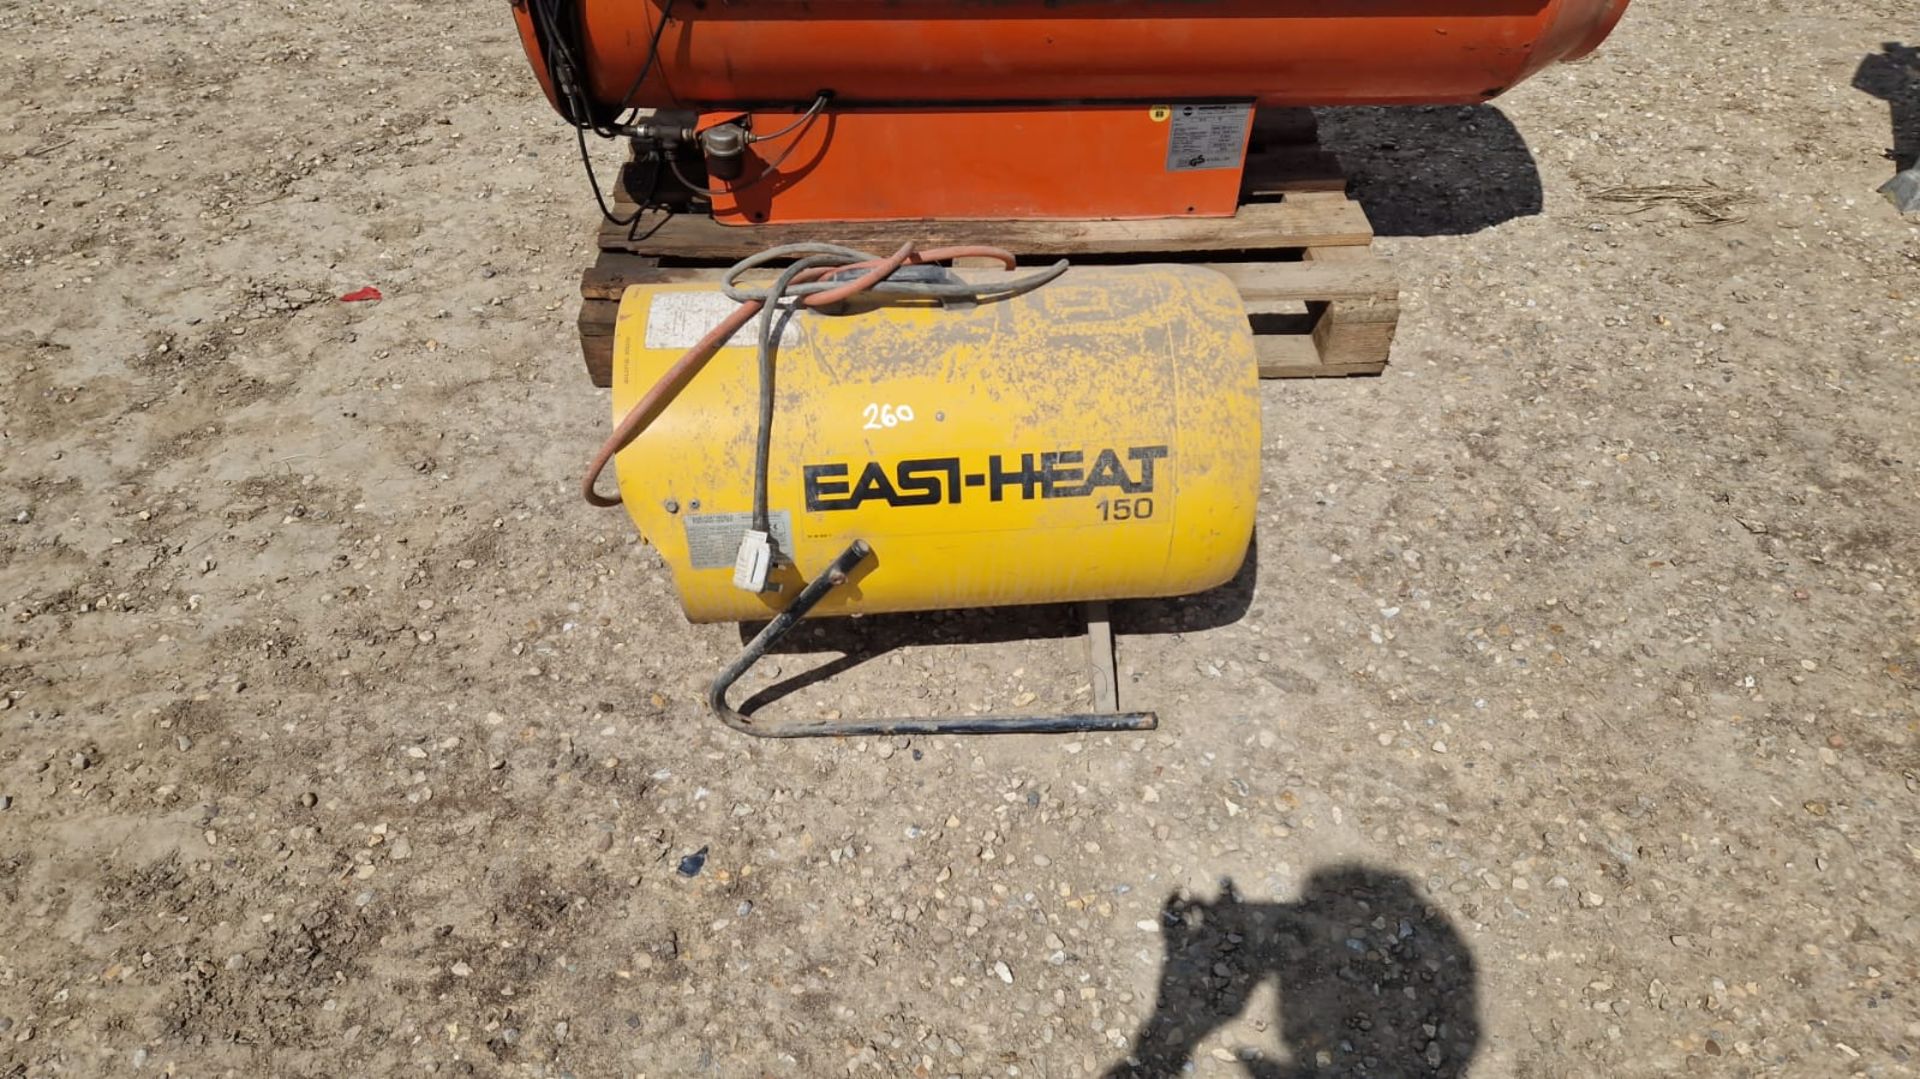 Easi-Heat 150 diesel space heater